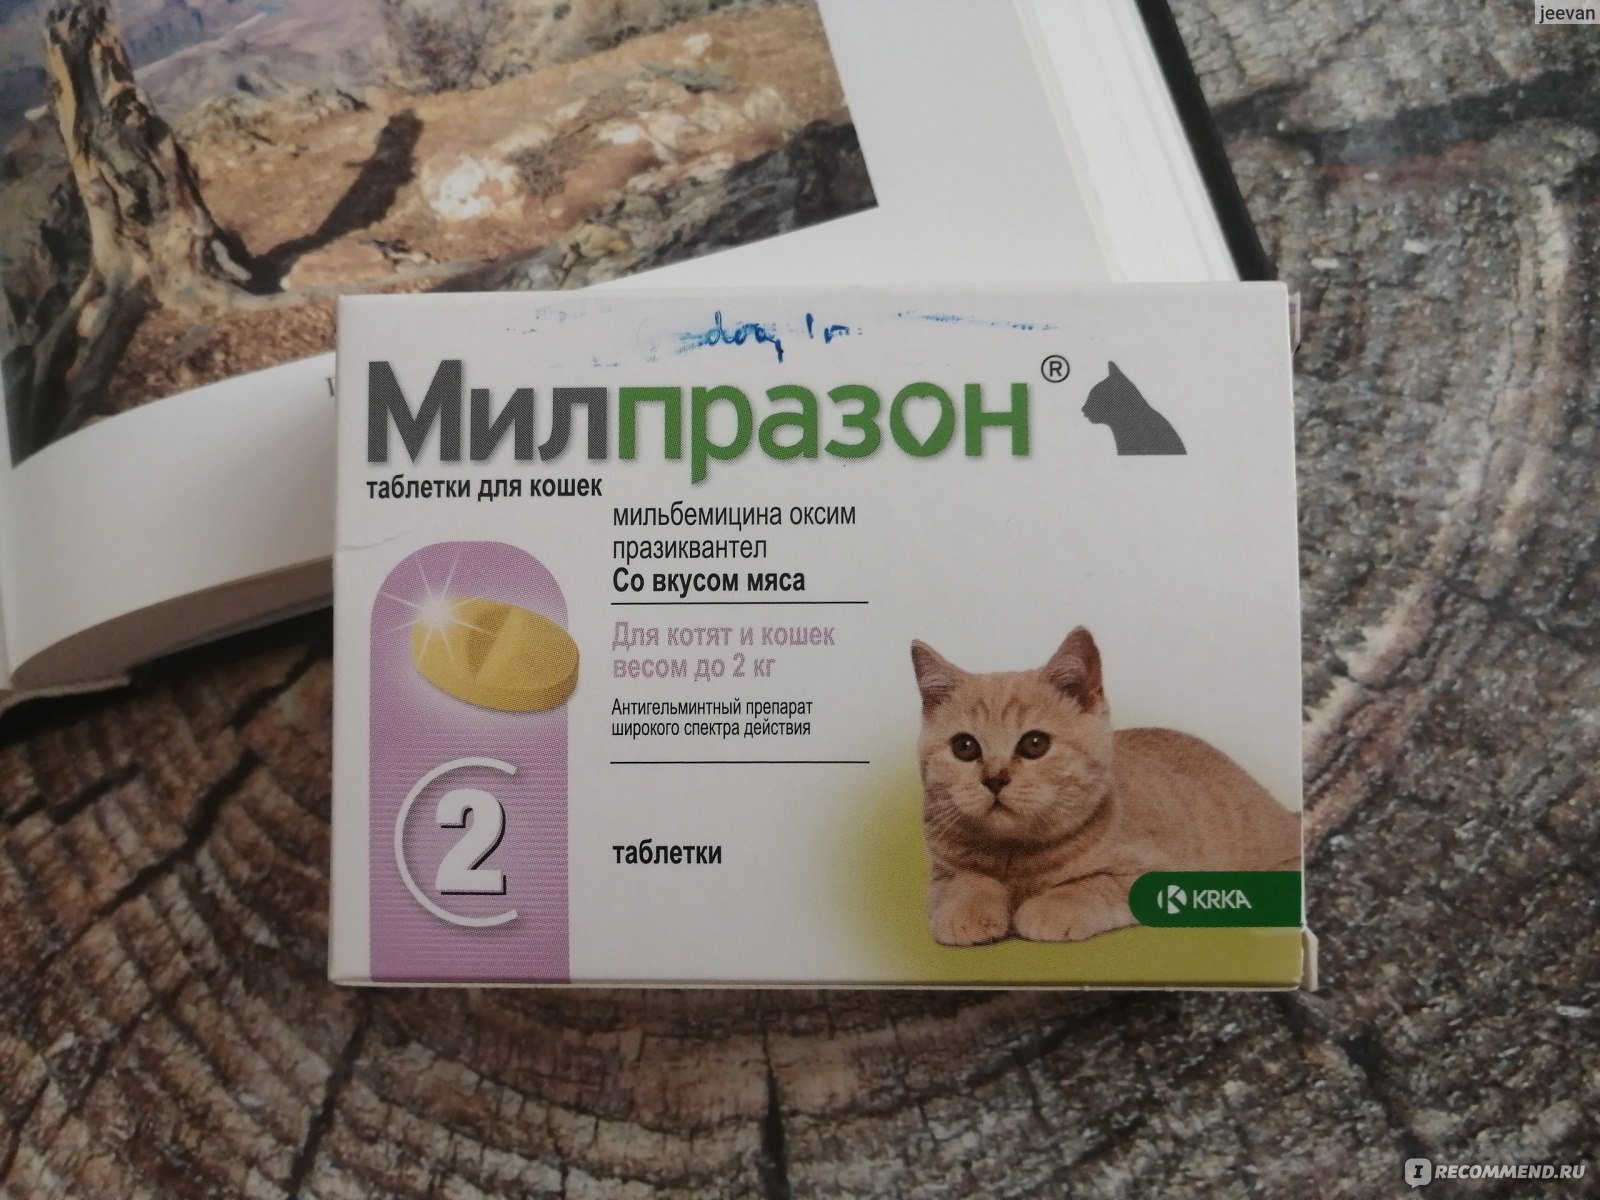 Таблетки от гельминтов для кошек Милпразон